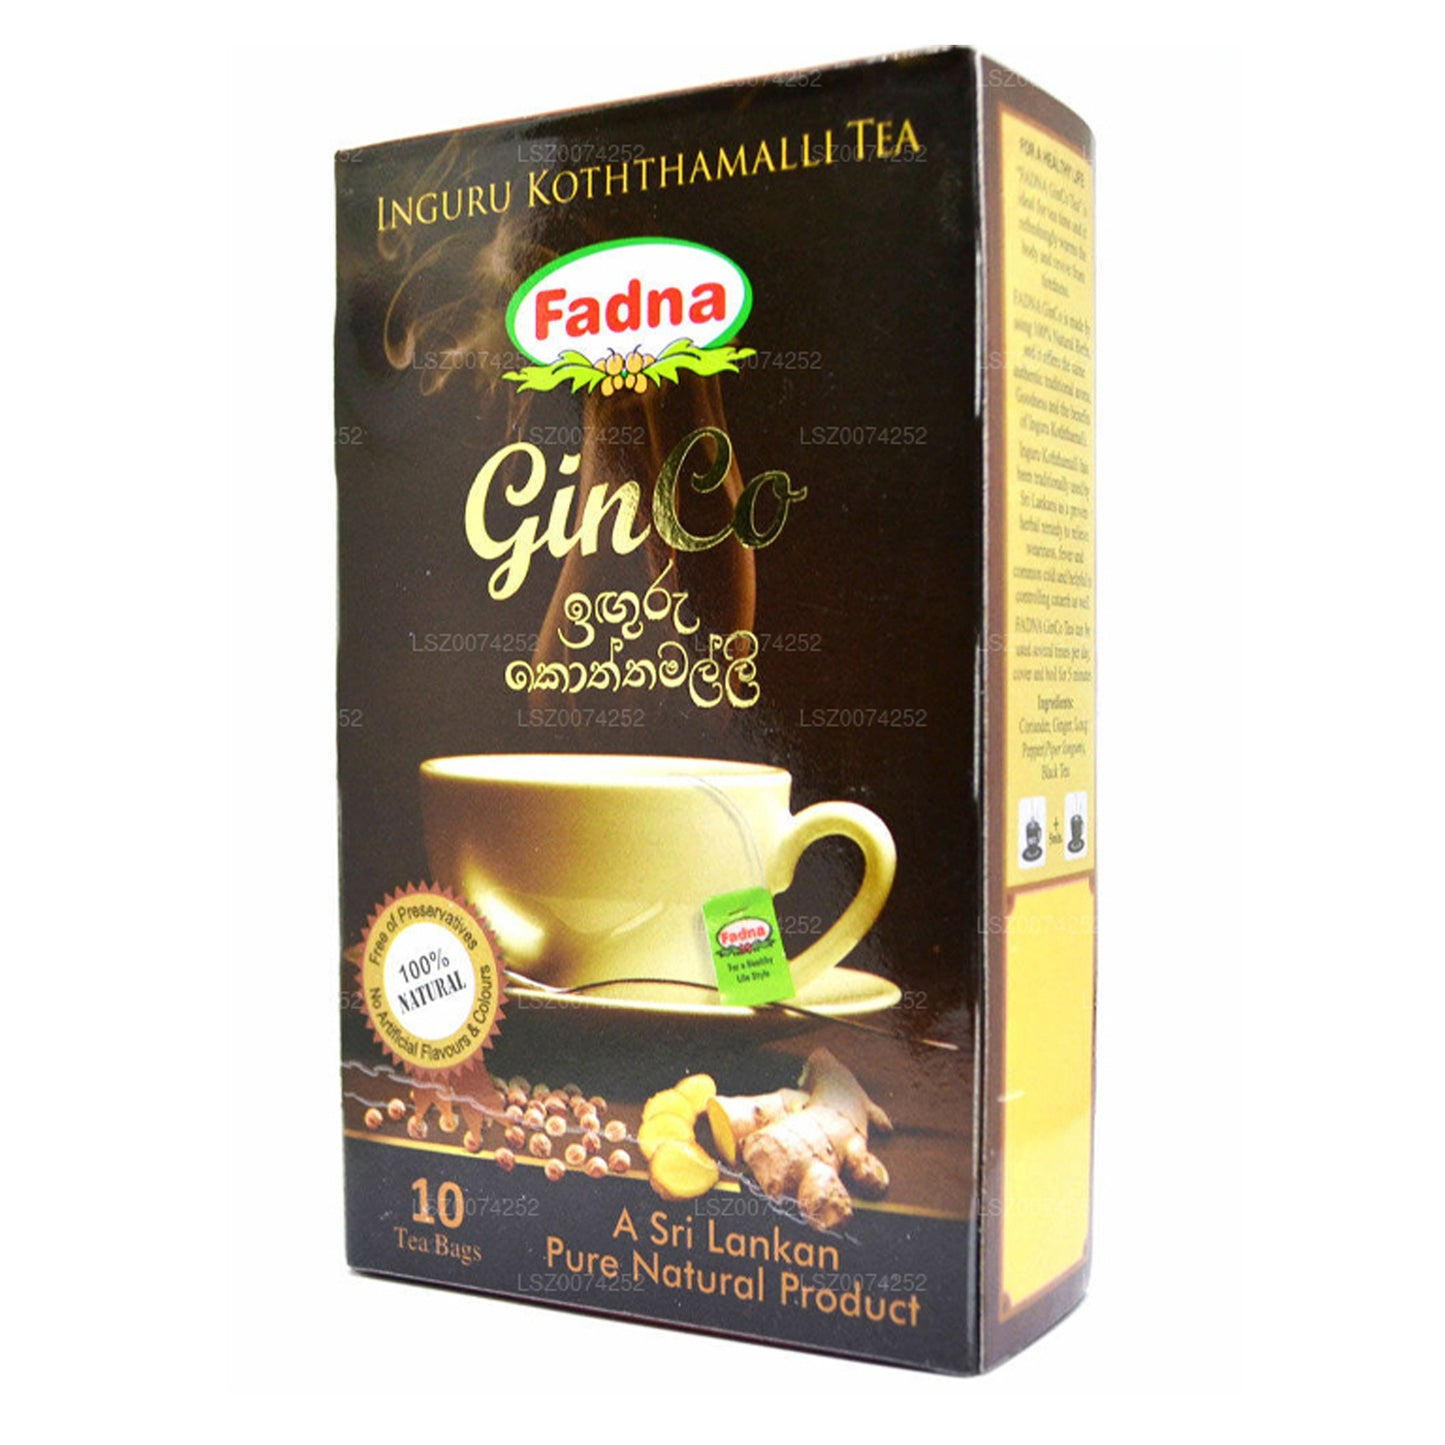 Fadna-thee met gember- en koriandersmaak (20 g) 10 theezakjes